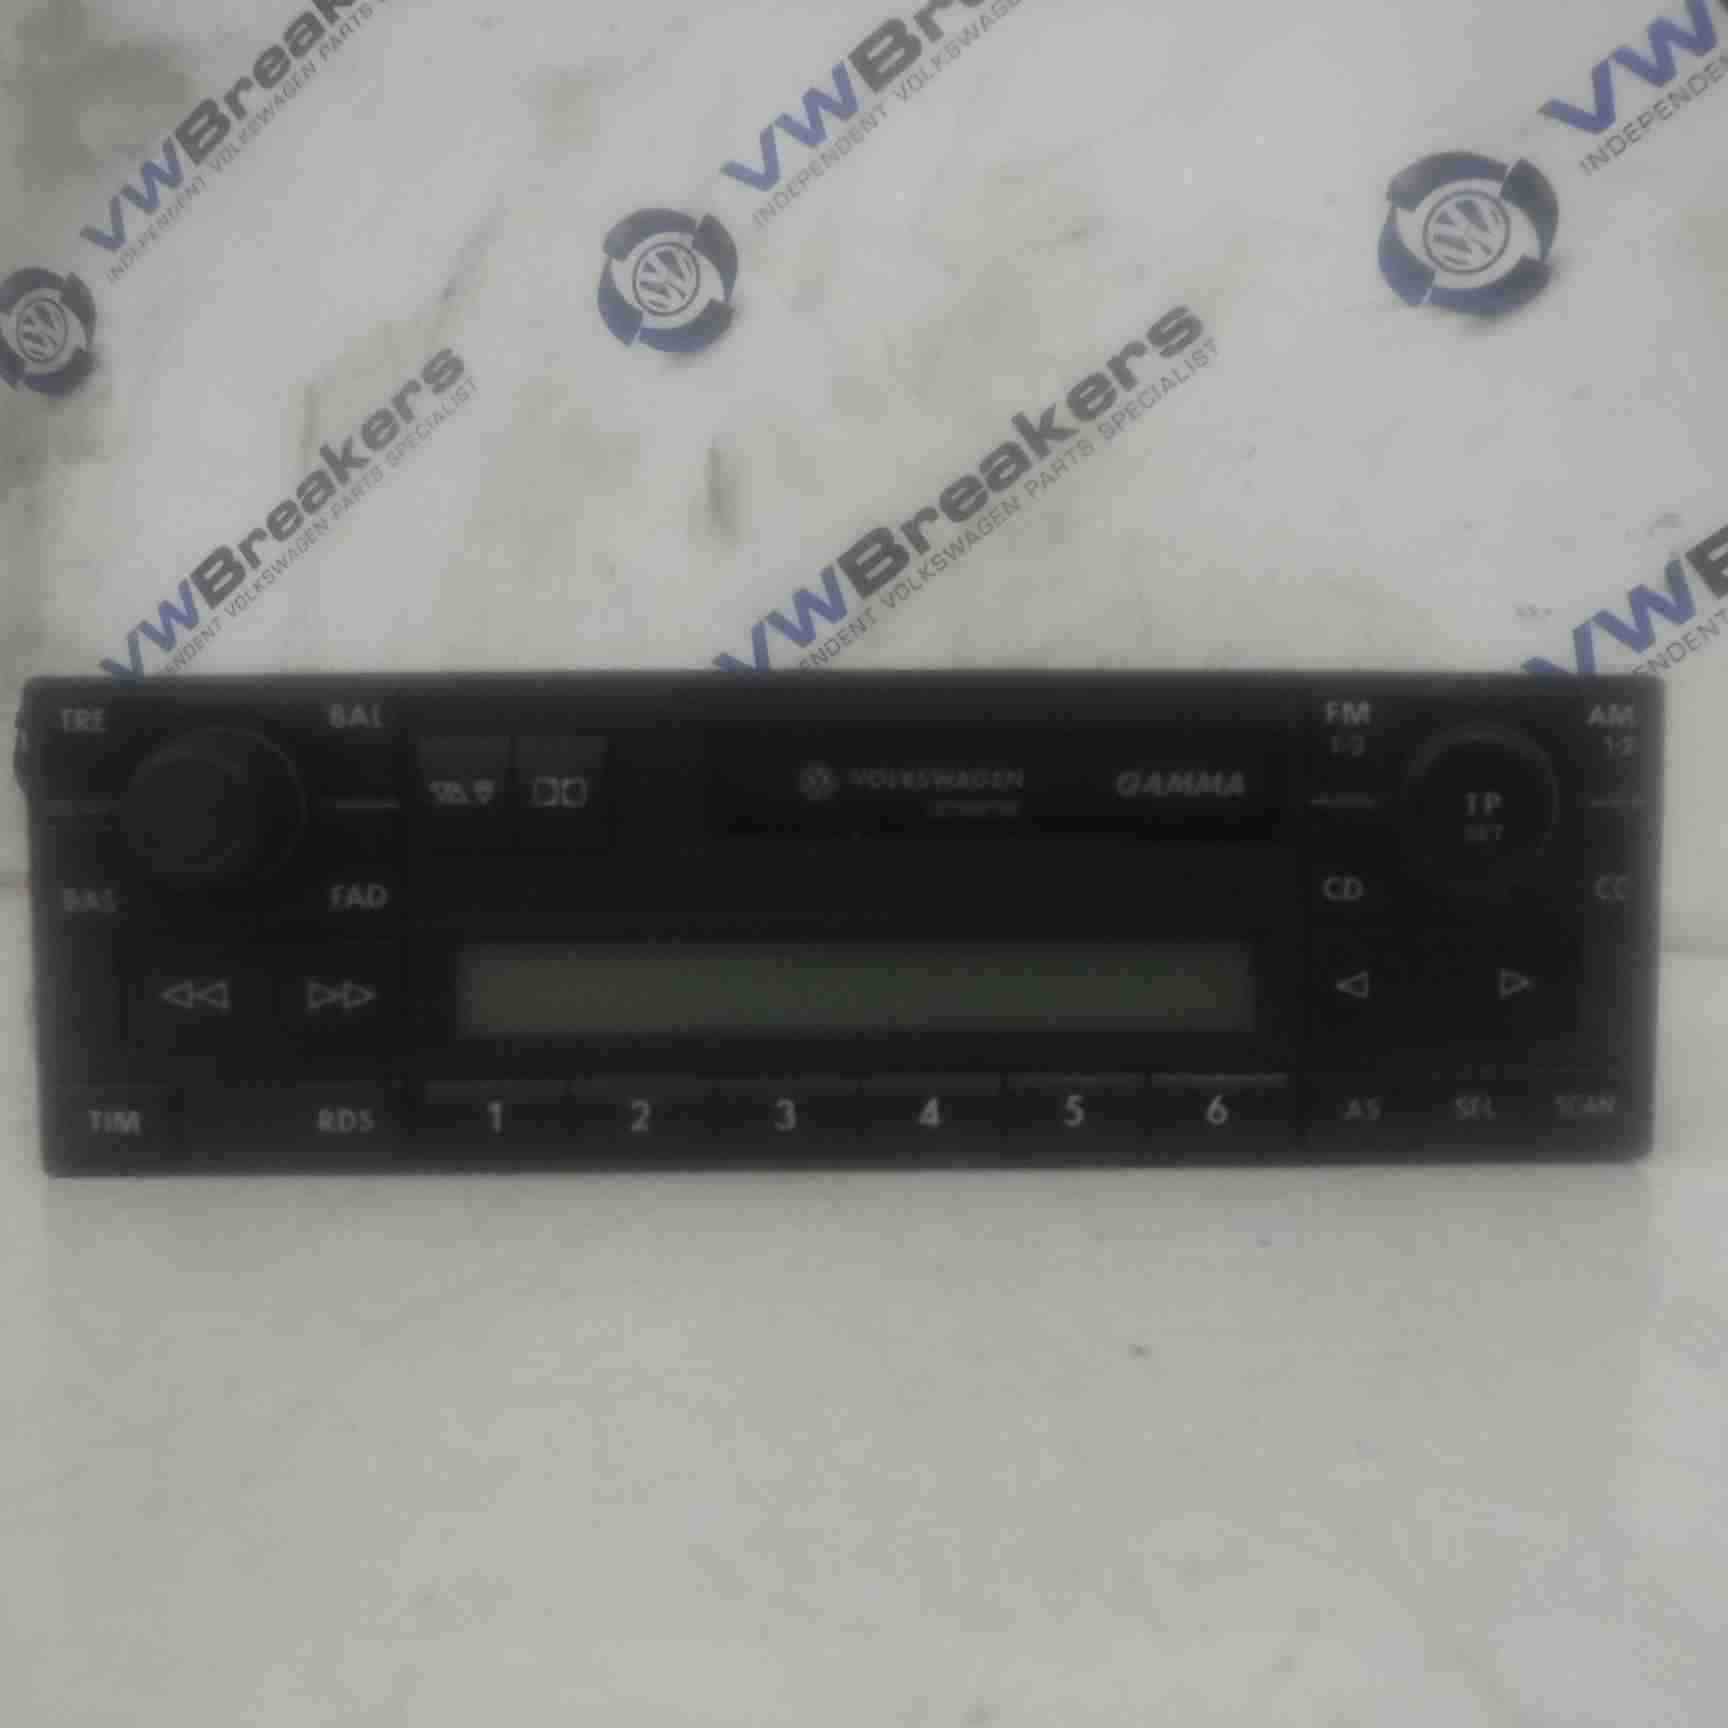 Volkswagen Polo 9N 2003-2006 Tape Casette Player 6N0035186b